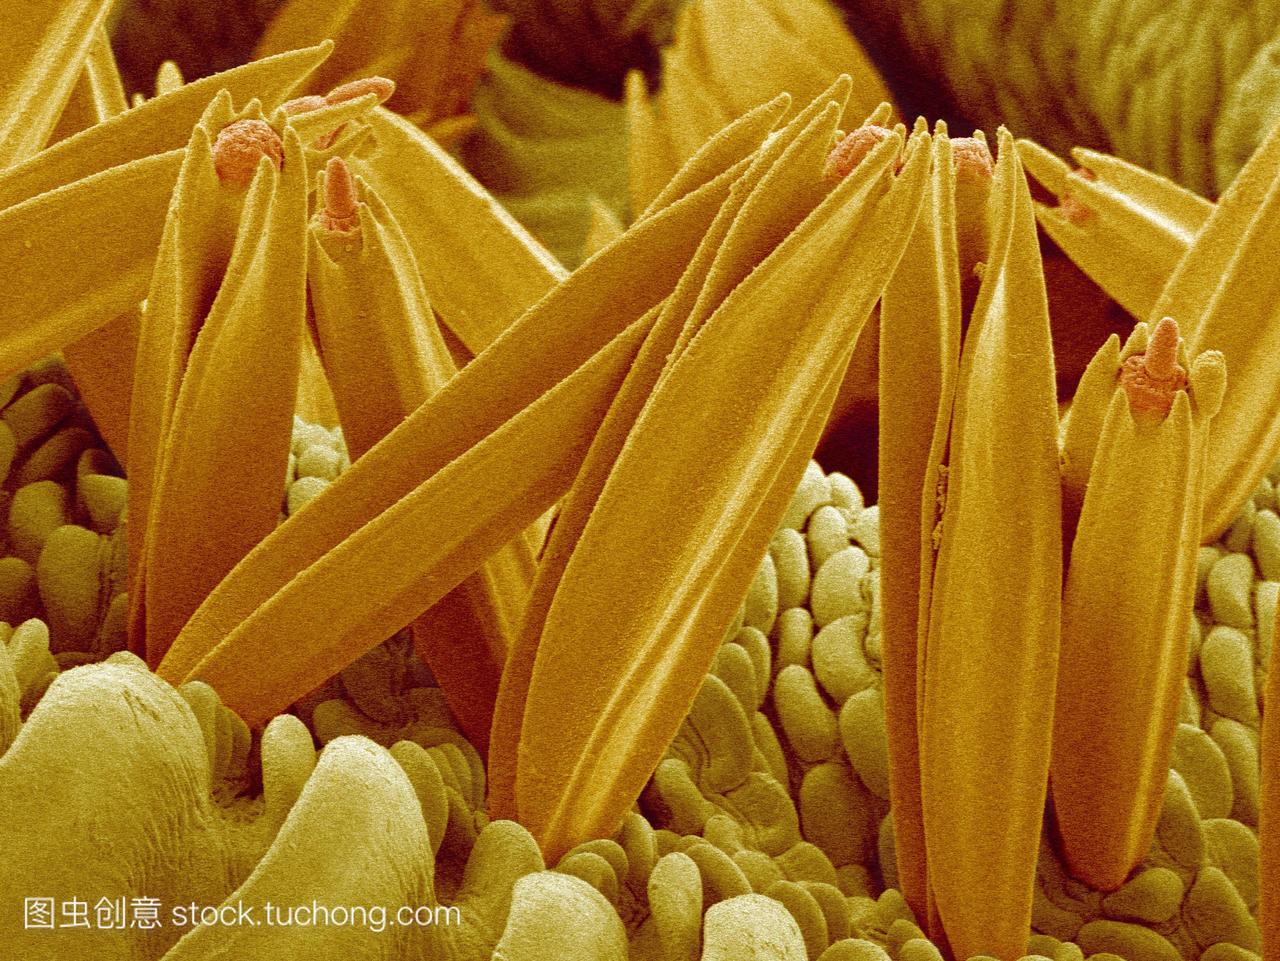 电子显微镜sem的唇触须,在喙的两侧被发现管